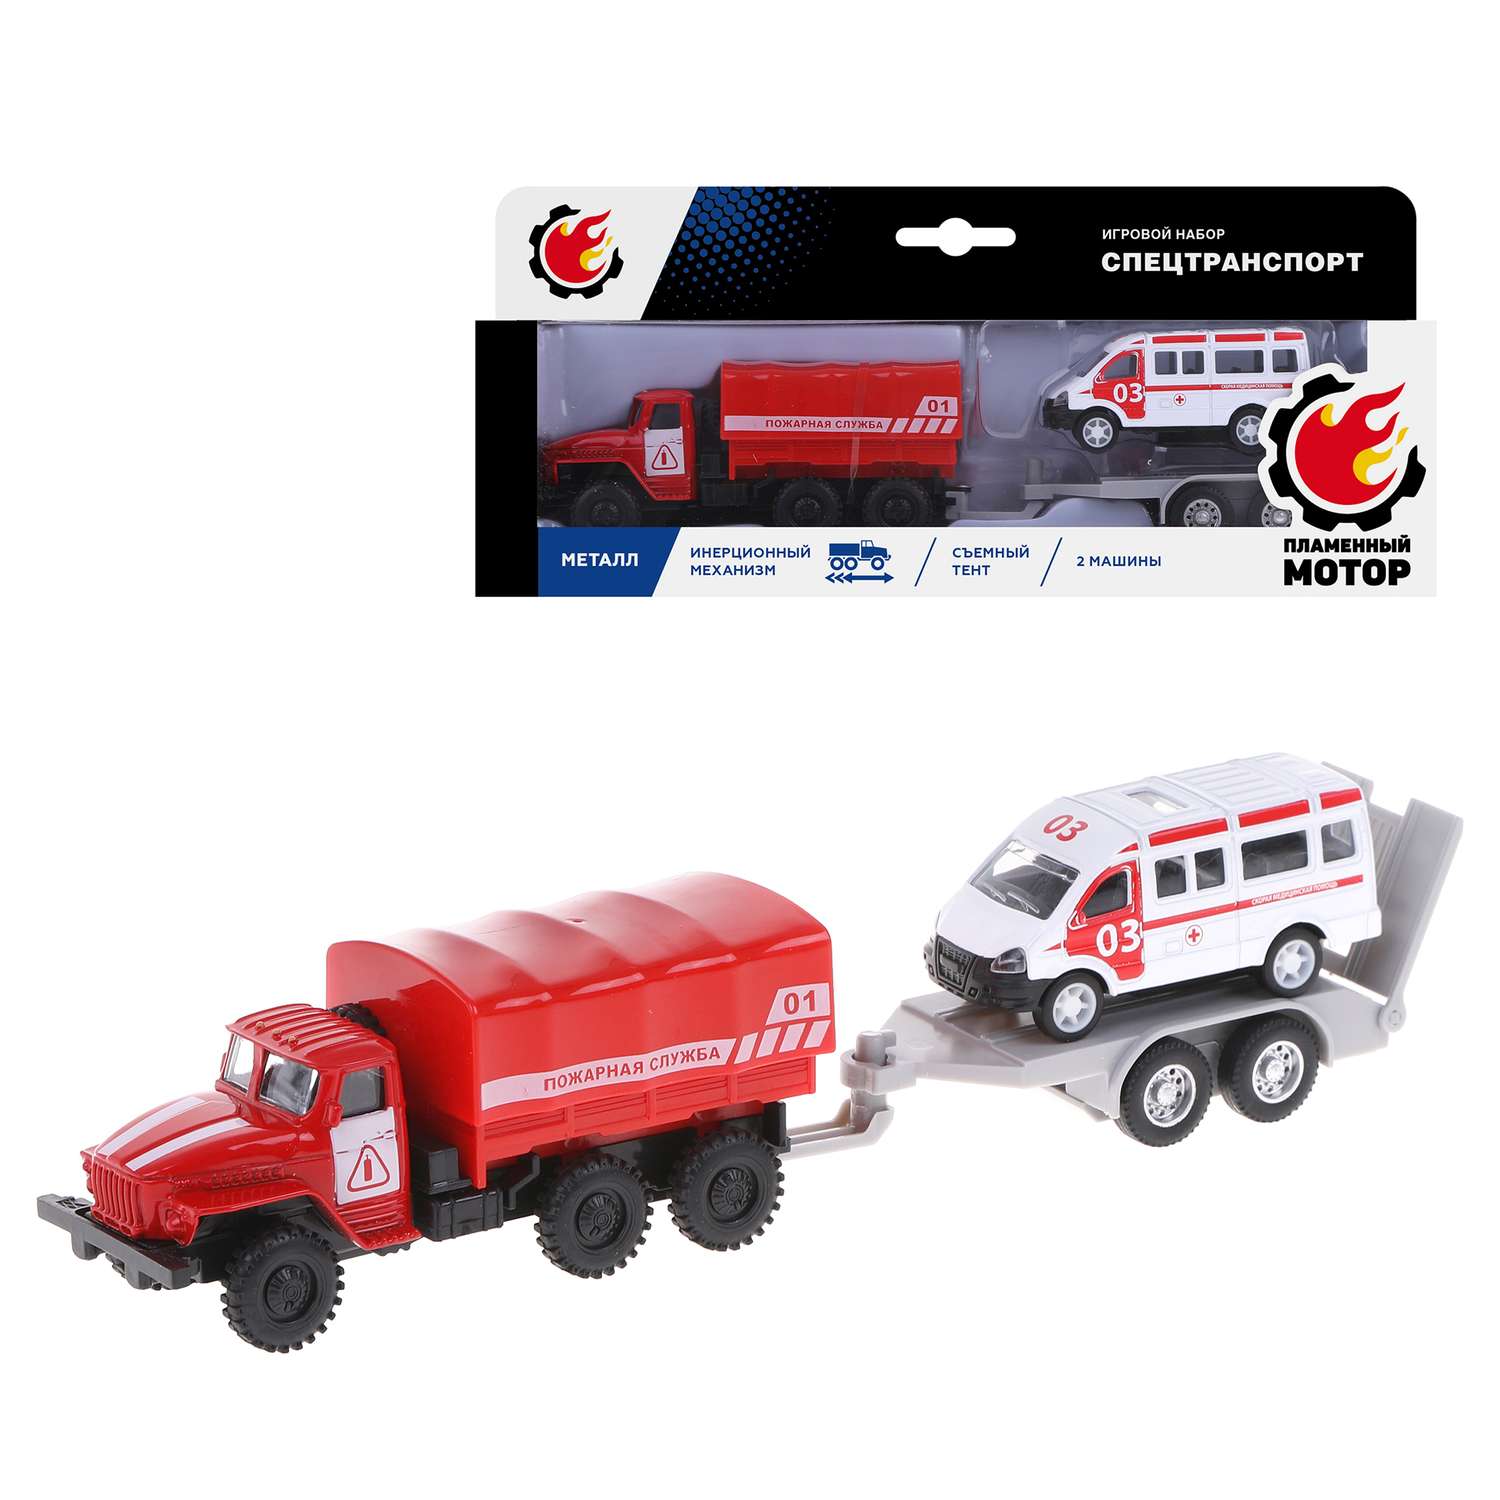 Машинки металлические Пламенный мотор набор машинок Пожарная служба грузовик с прицепом инерционный 870839 - фото 2